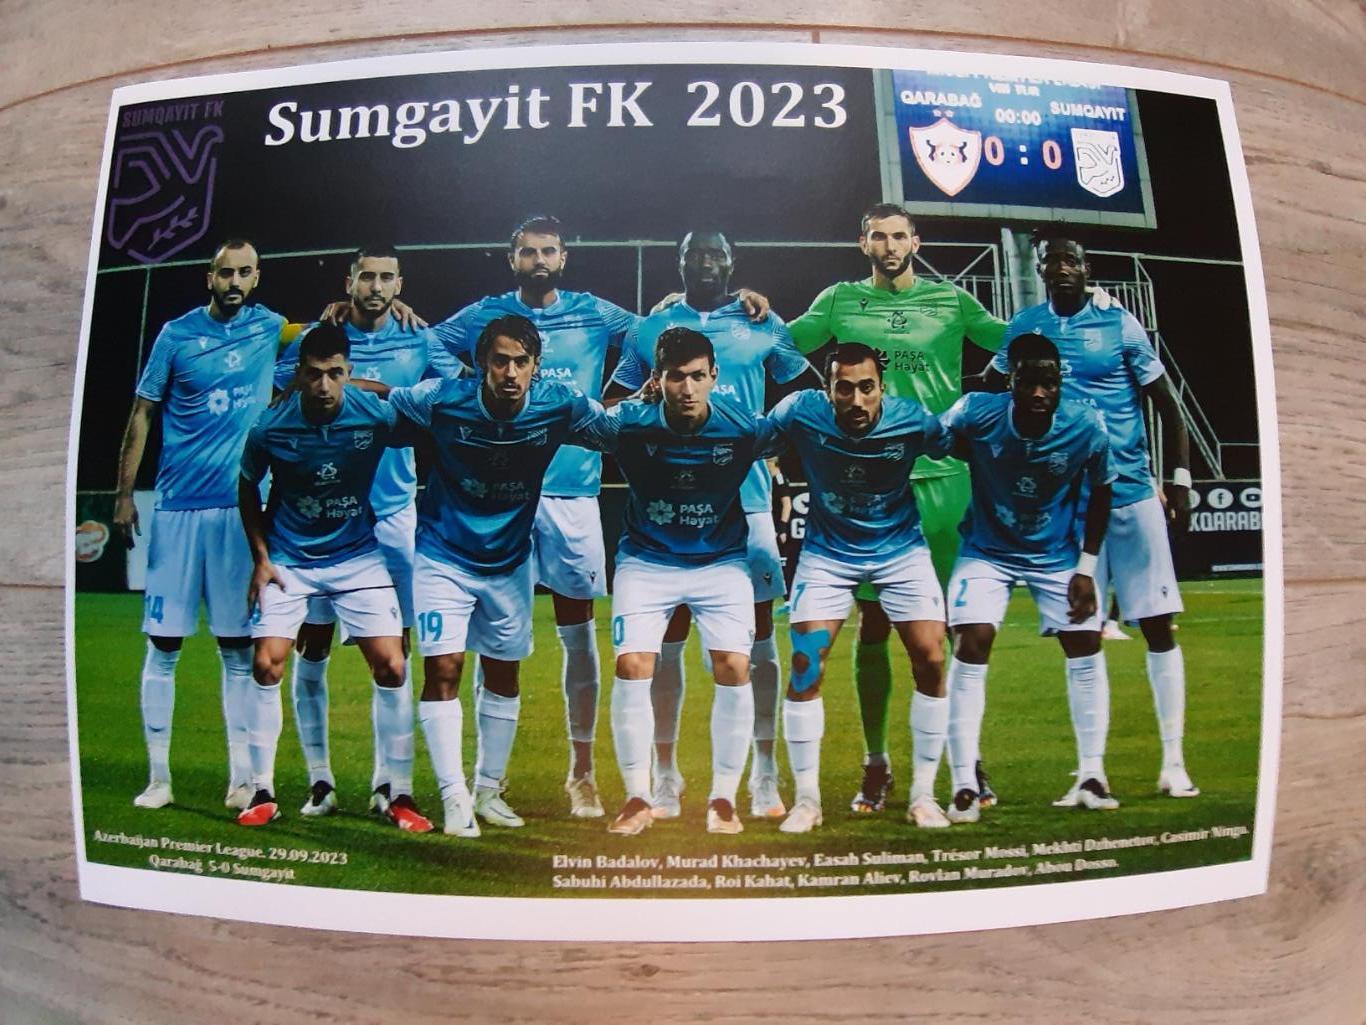 Sumgayit.2023 (Azerbaijan)